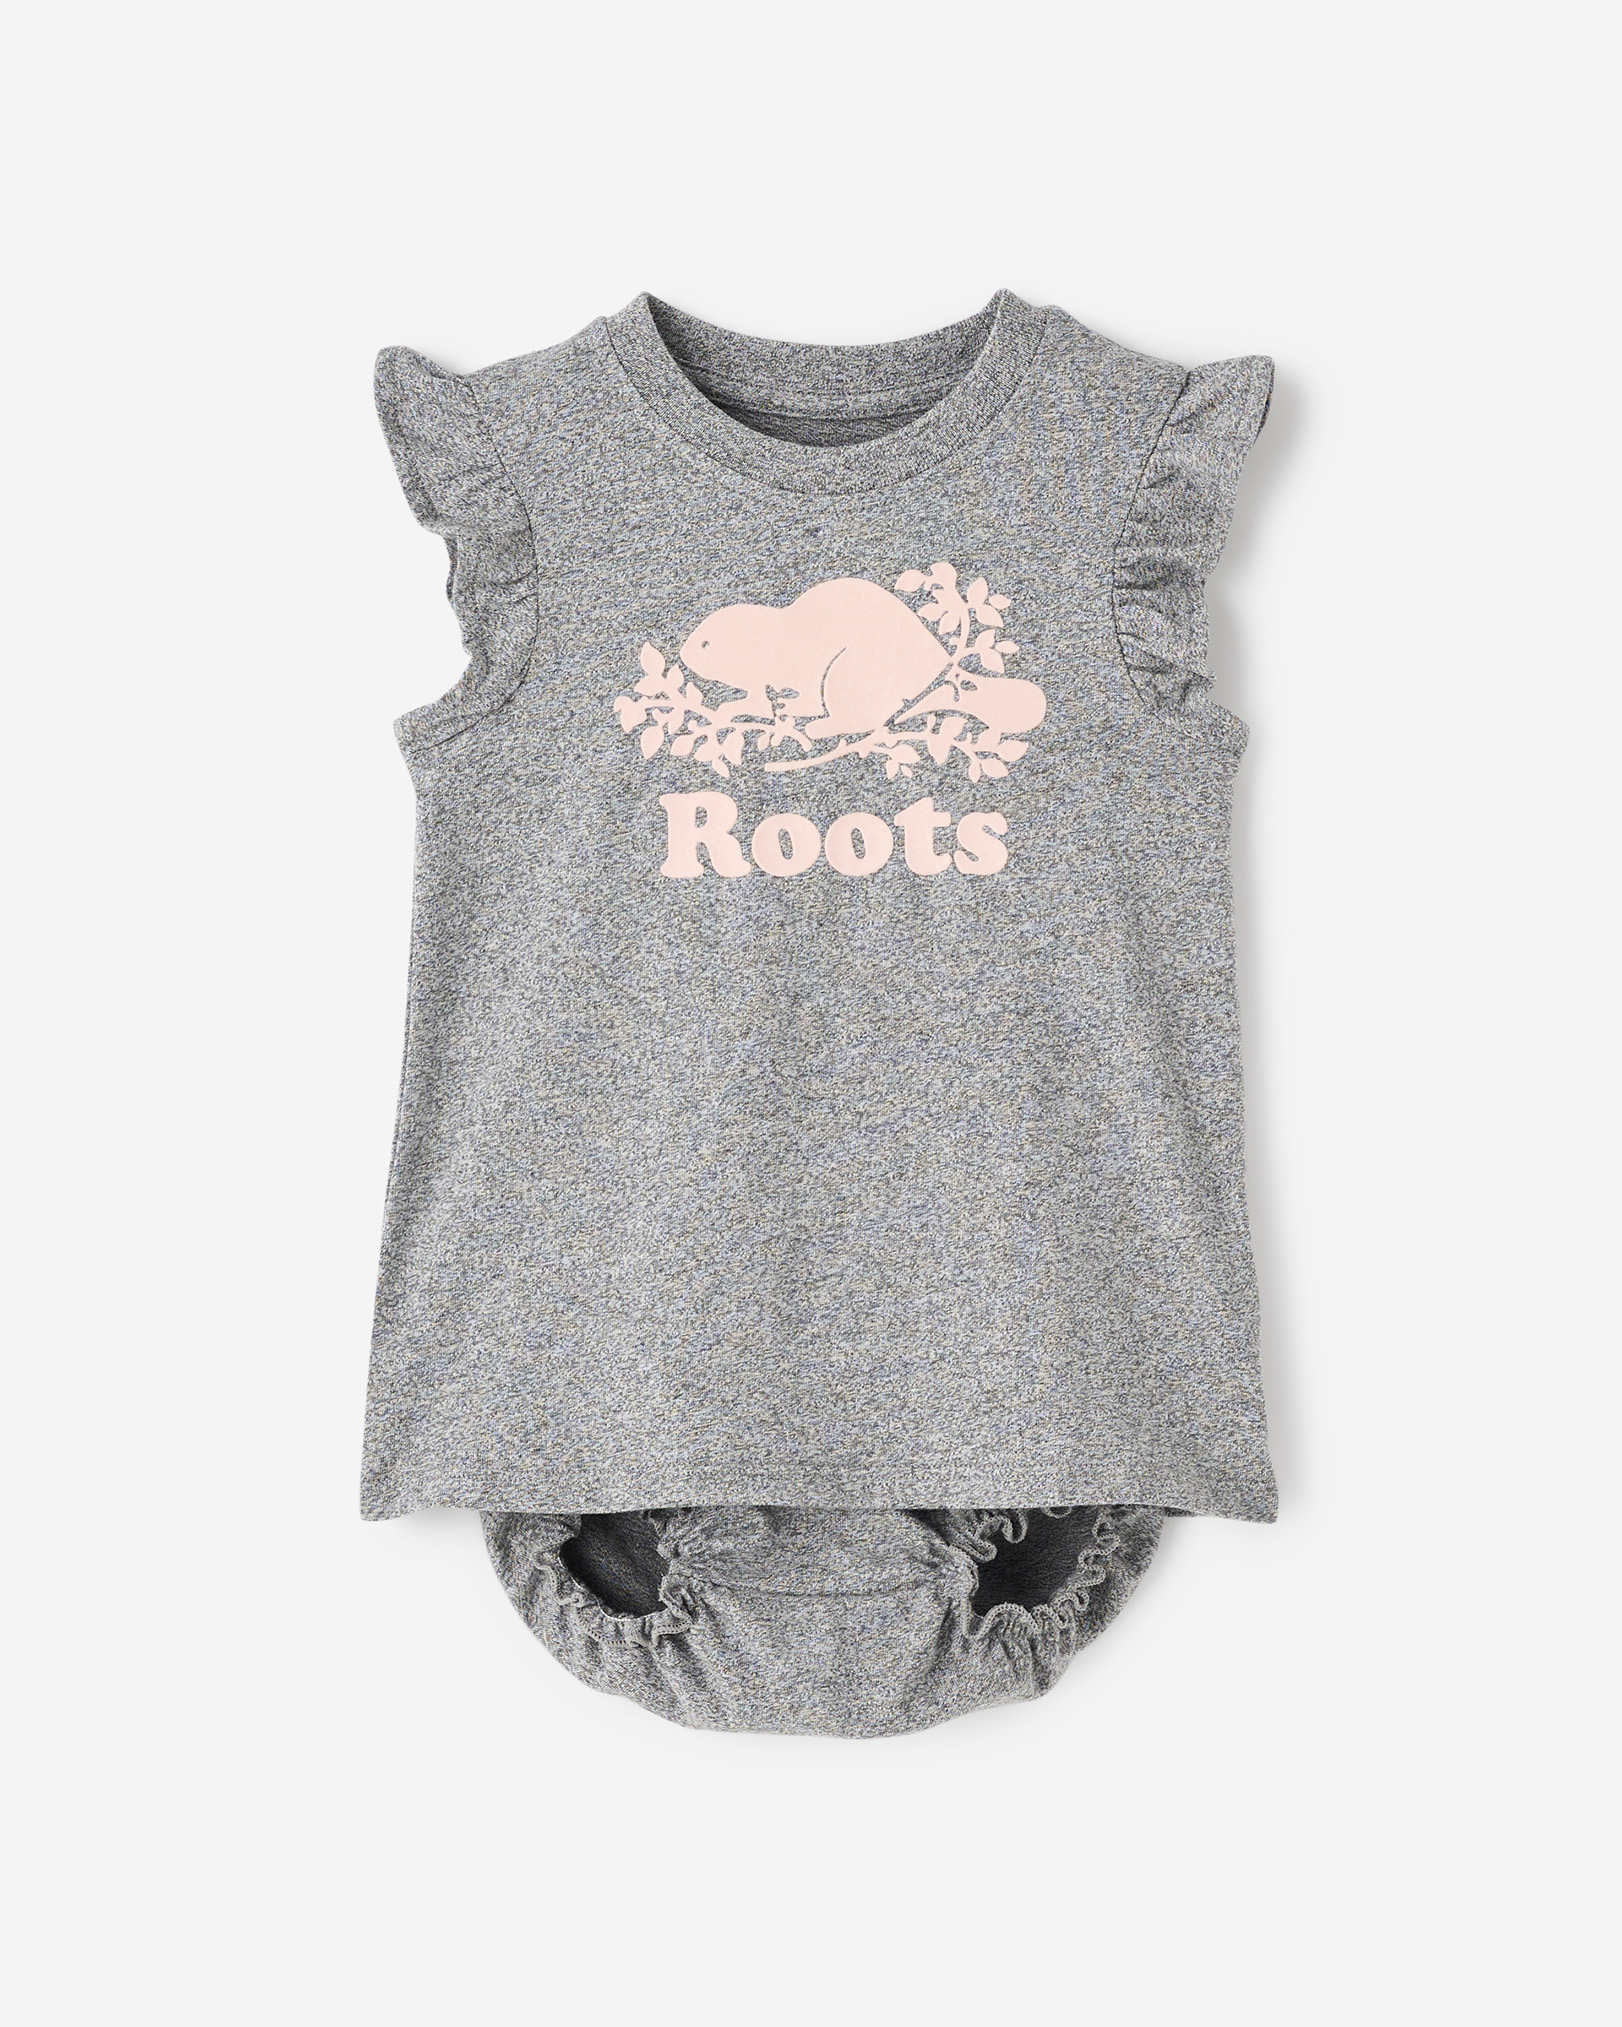 Roots Baby Cooper Dress in Salt/Pepper